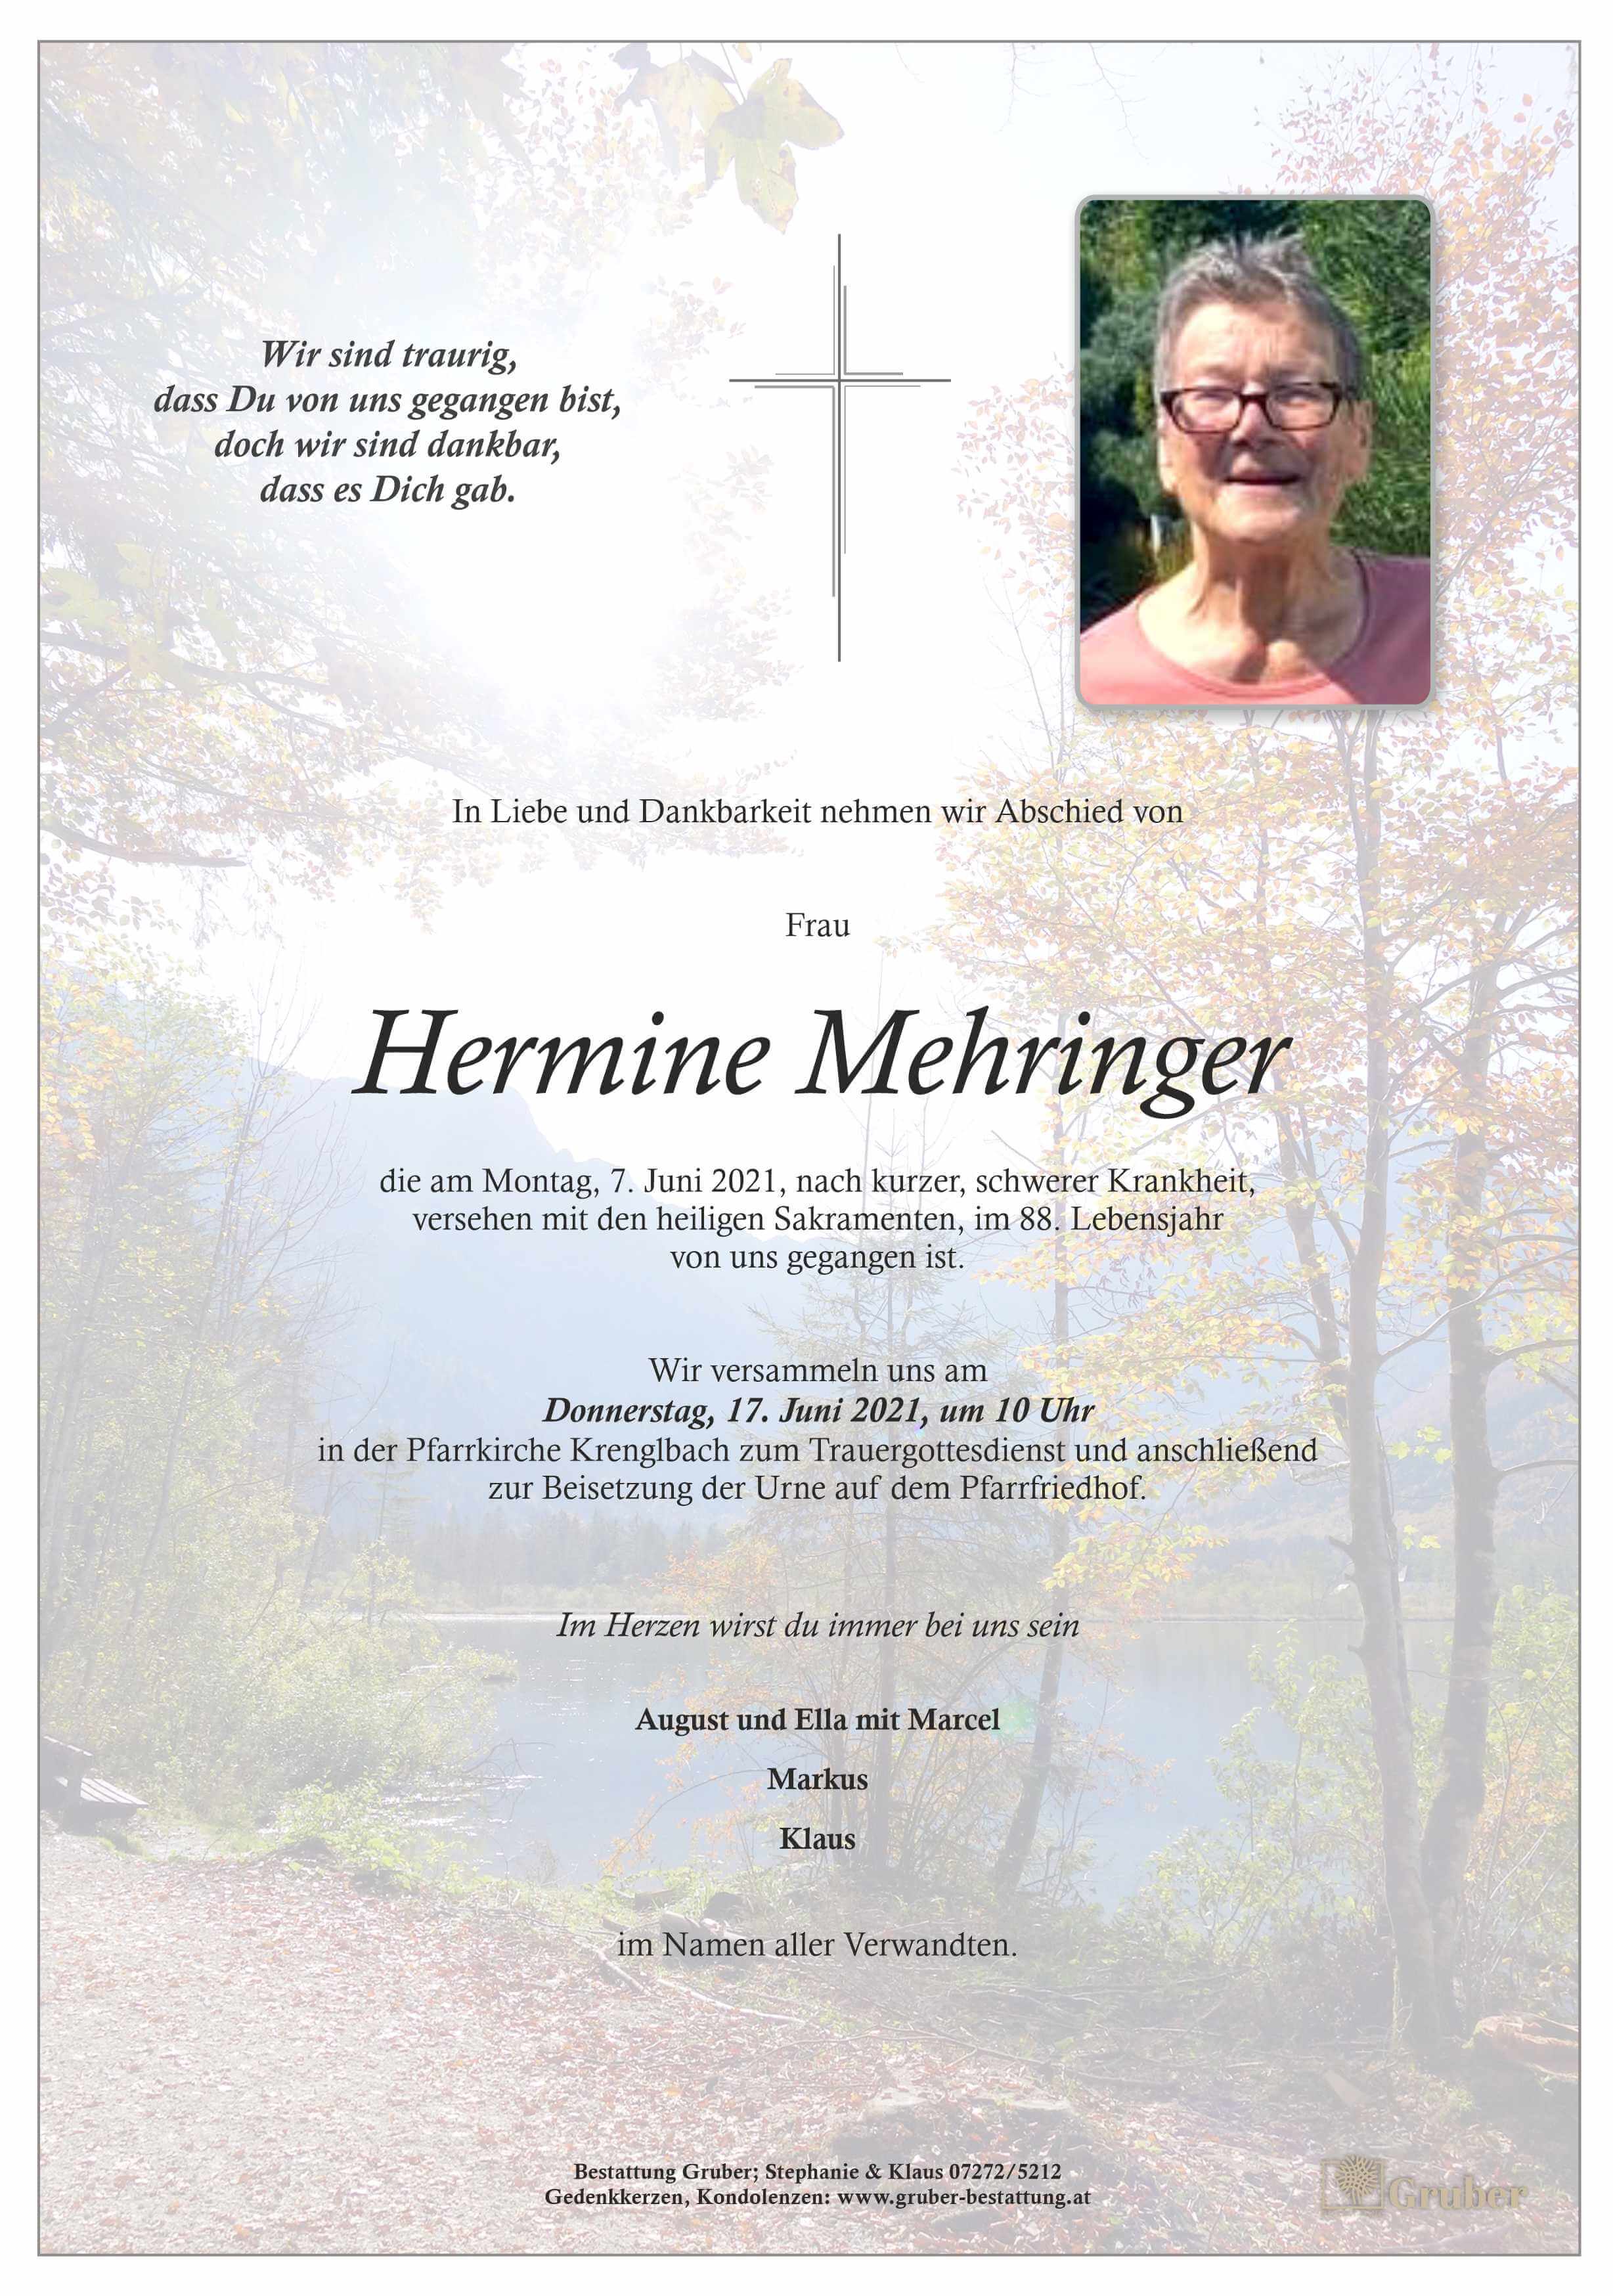 Hermine Mehringer (Krenglbach)